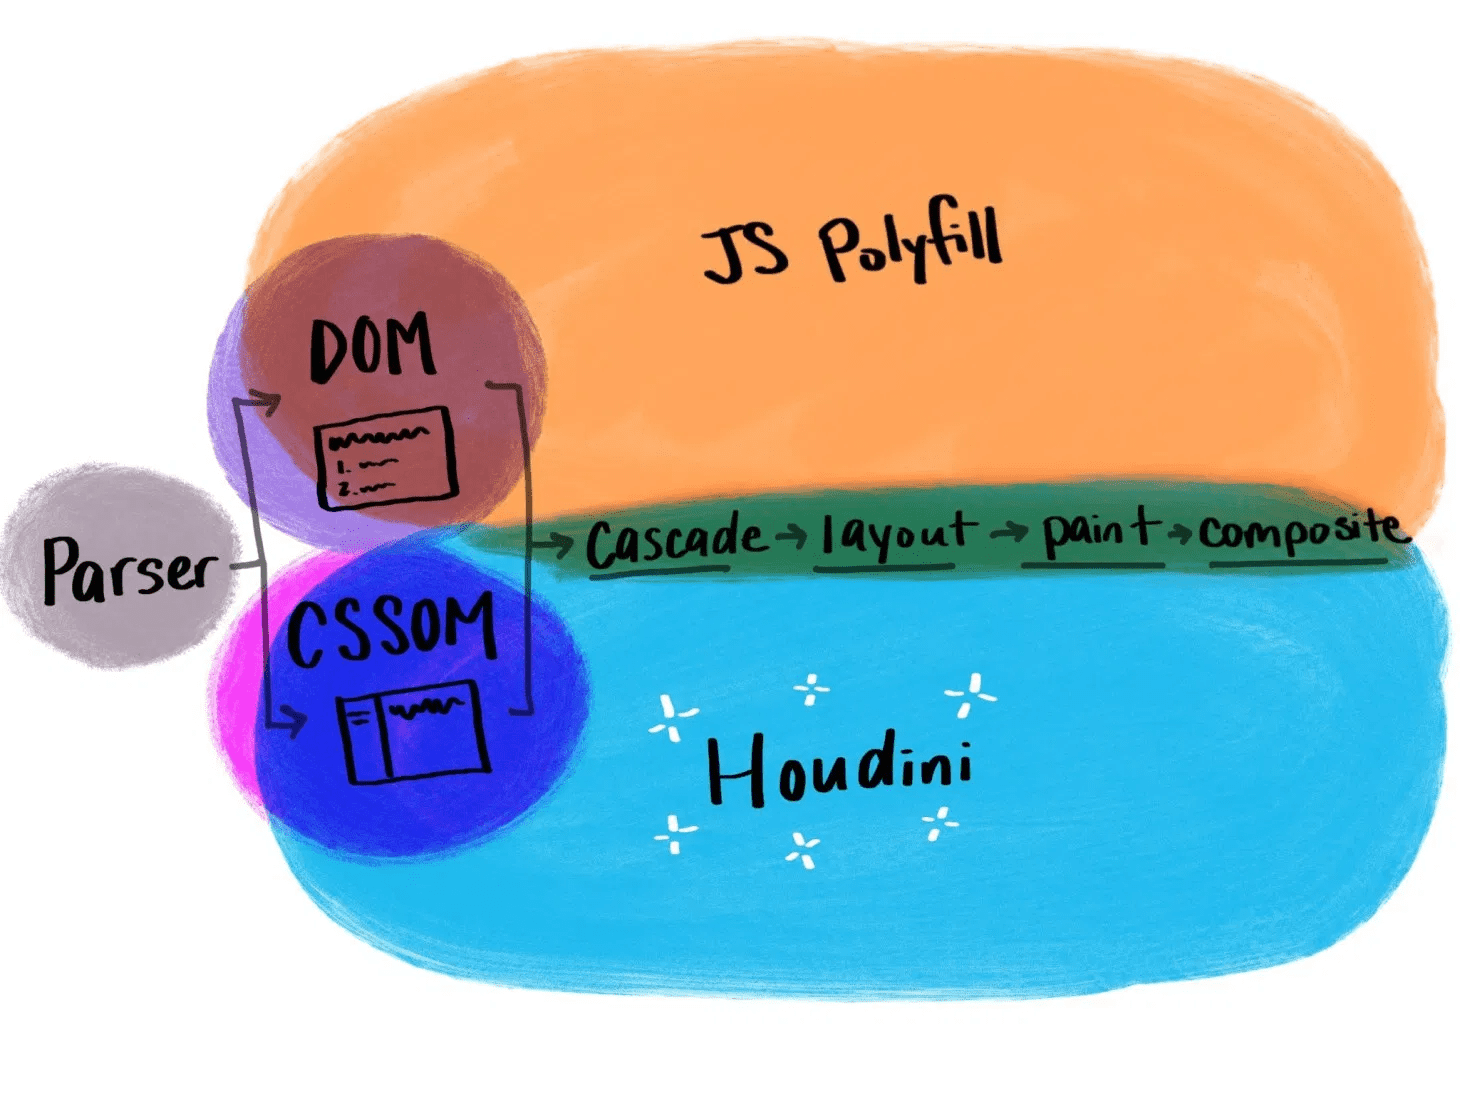 صورة توضيحية تعرض طريقة عمل Houdini مقارنةً برموز polyfill التقليدية في JavaScript